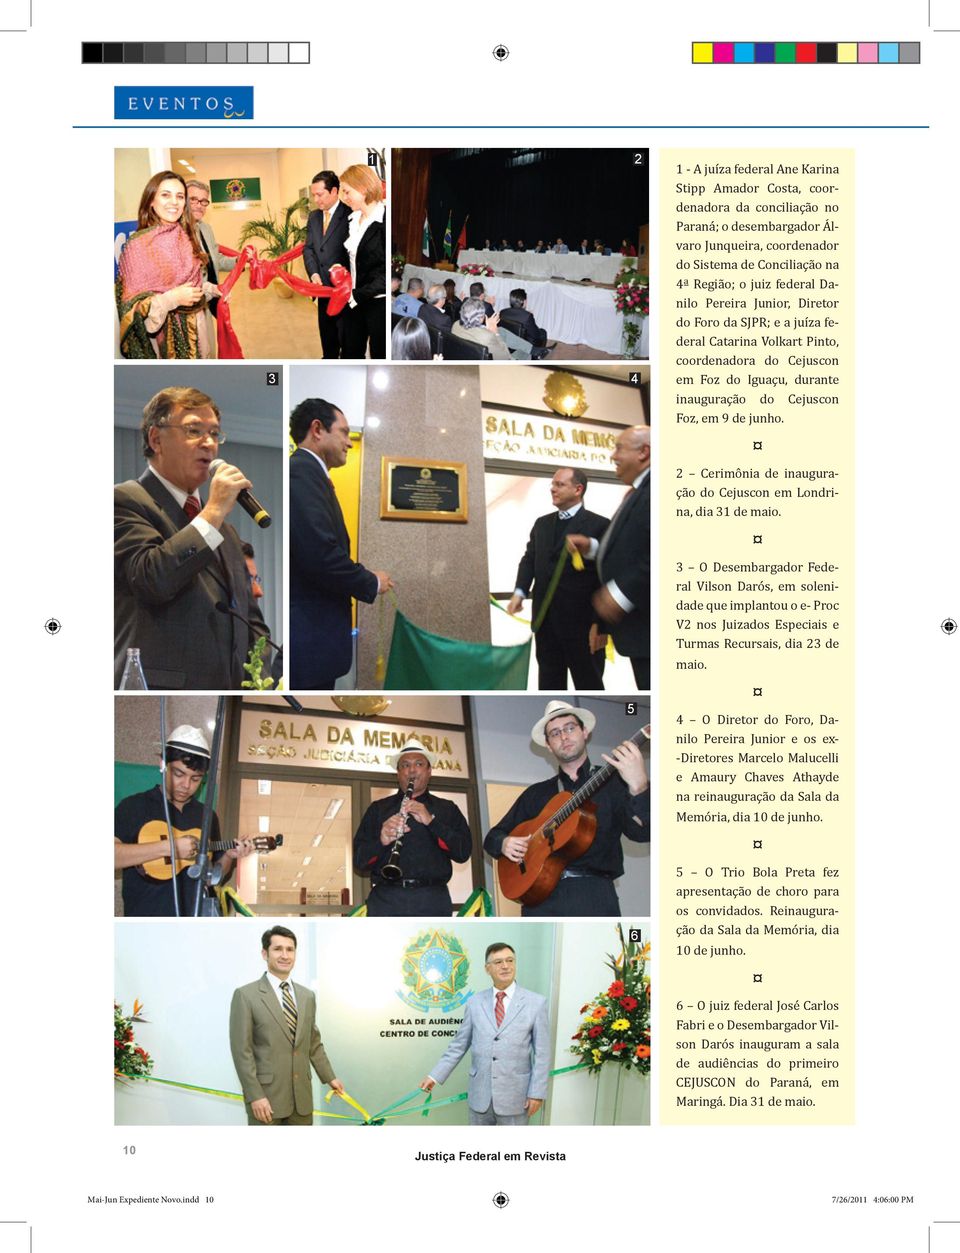 2 Cerimônia de inauguração do Cejuscon em Londrina, dia 31 de maio.